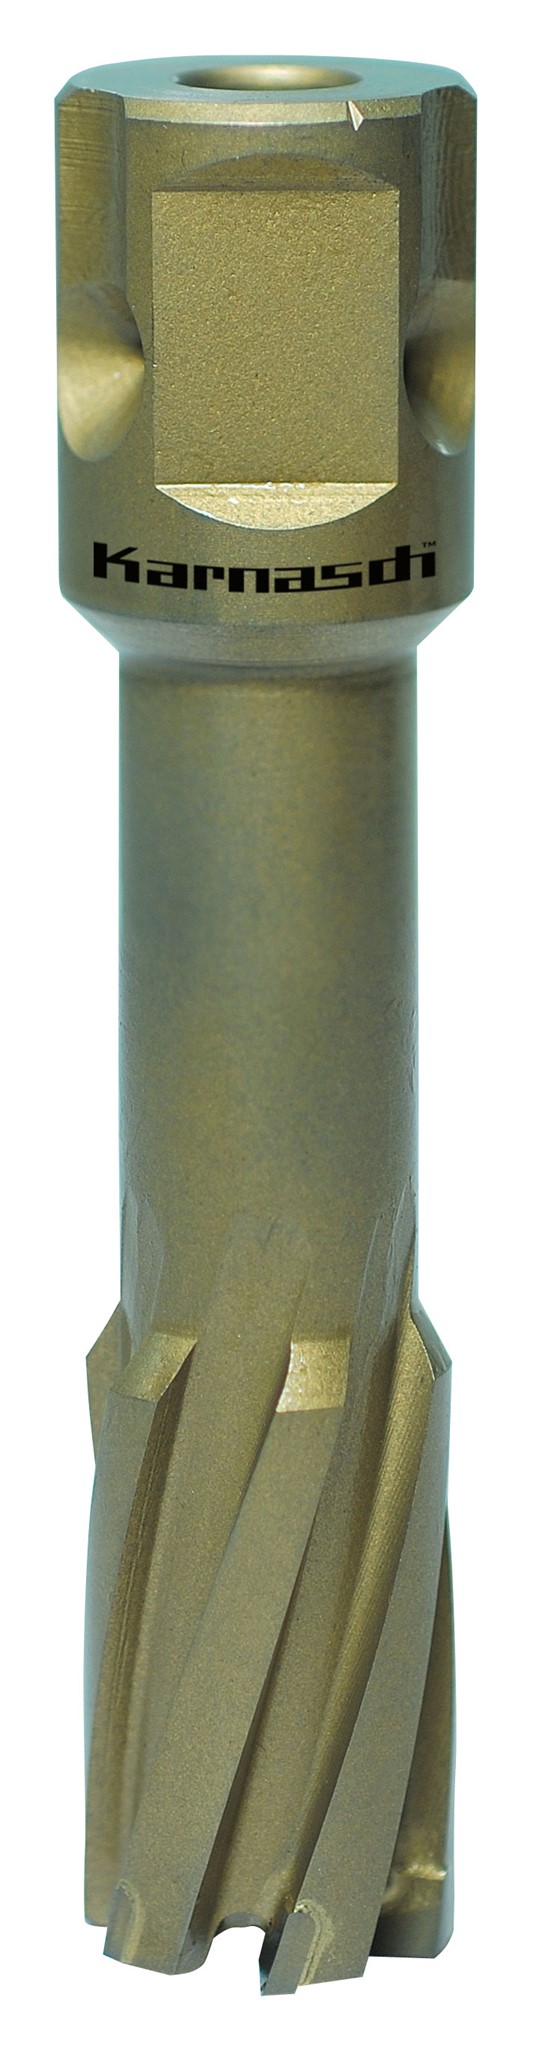 Bild von Kernbohrer Metallkraft HARD-LINE 55 Universal Ø 45 mm